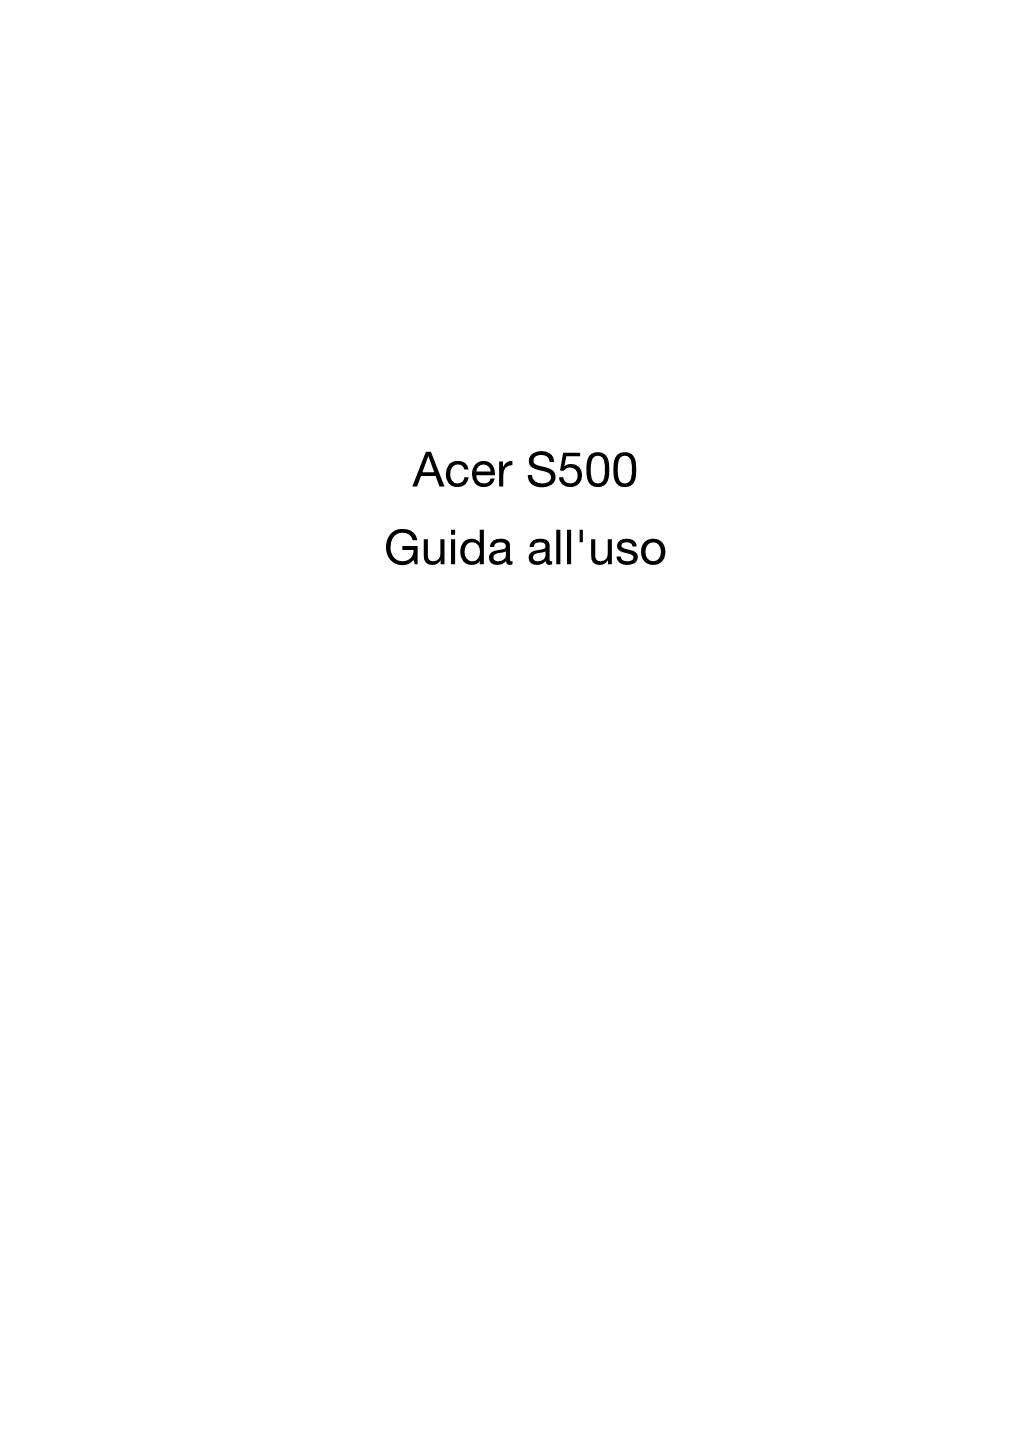 Manuale Dell'utente Acer S500 Guida All'uso